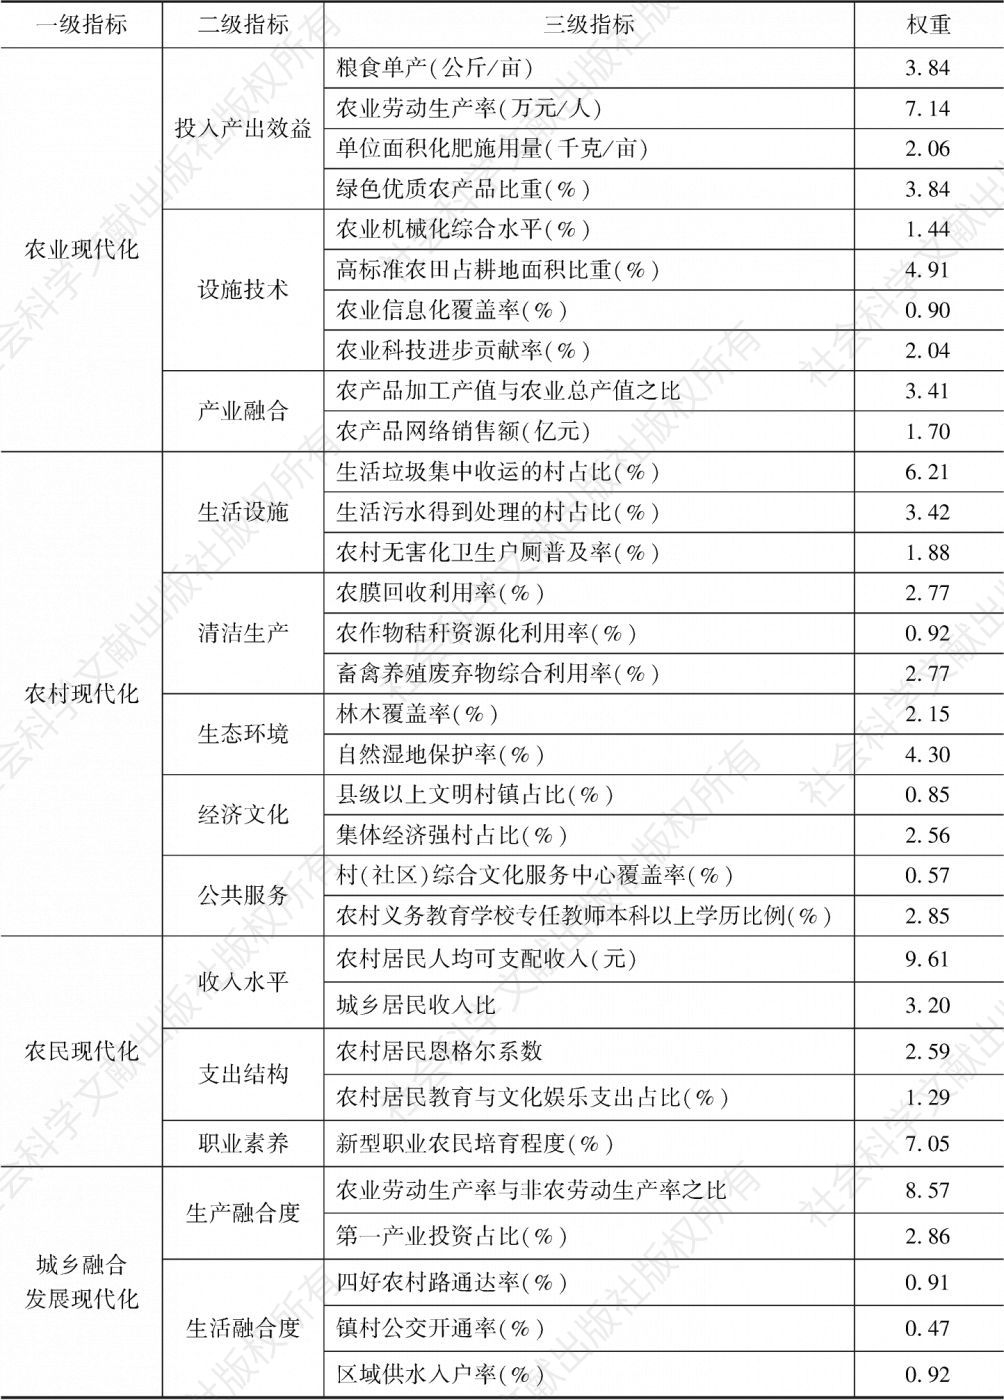 表1 江苏农业农村现代化评价指标体系及权重